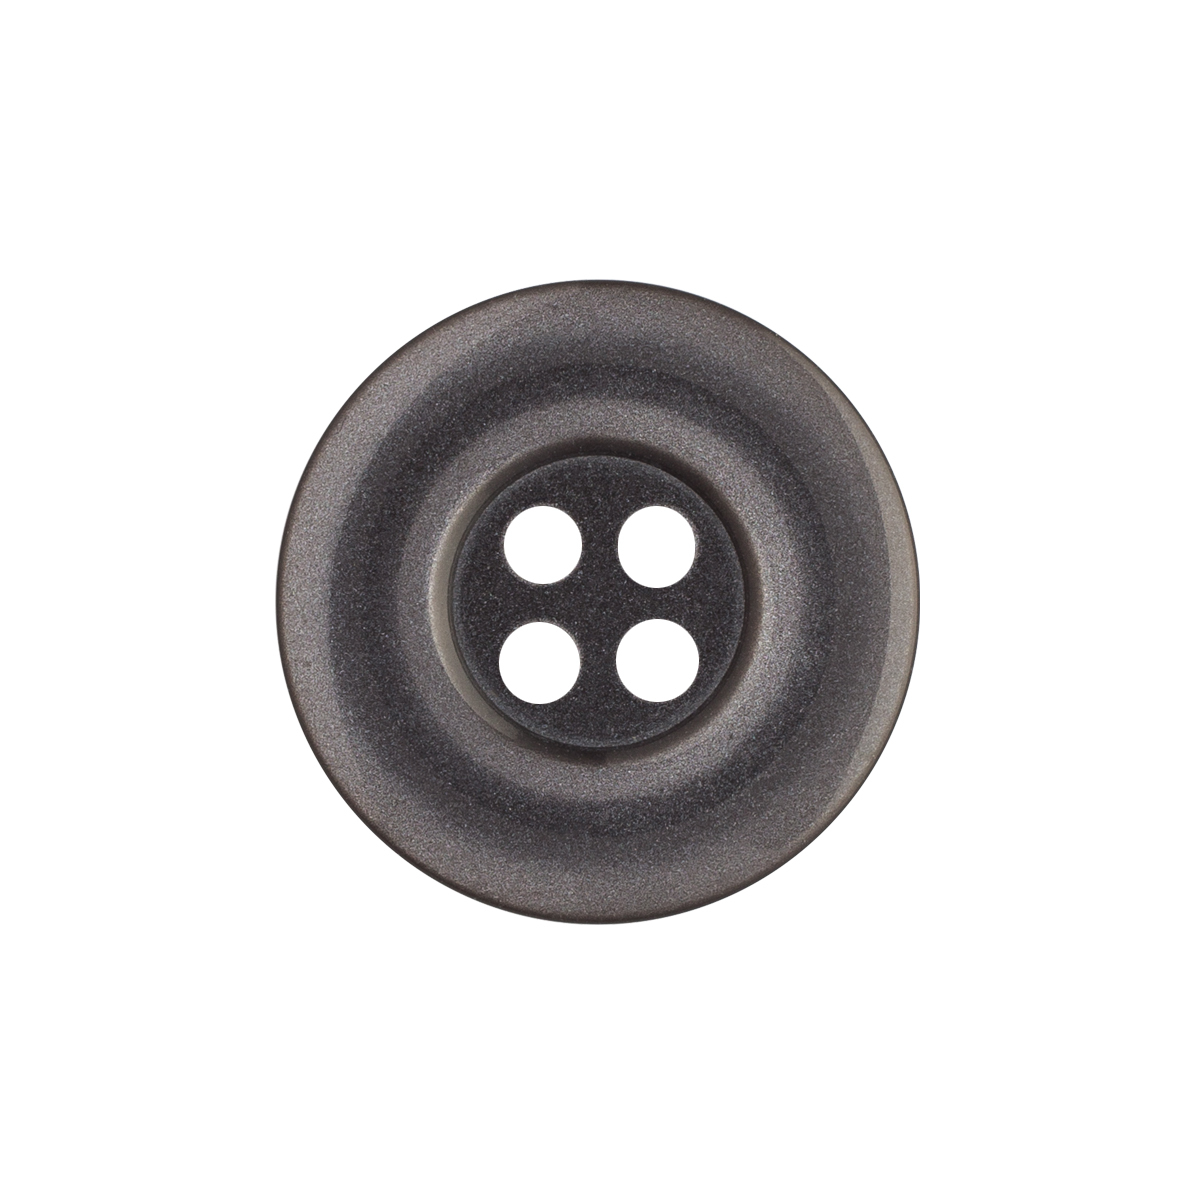 Uniform Buttons - 30L / 19mm - 1 Gross - 4-Hole - WAWAK Sewing Supplies